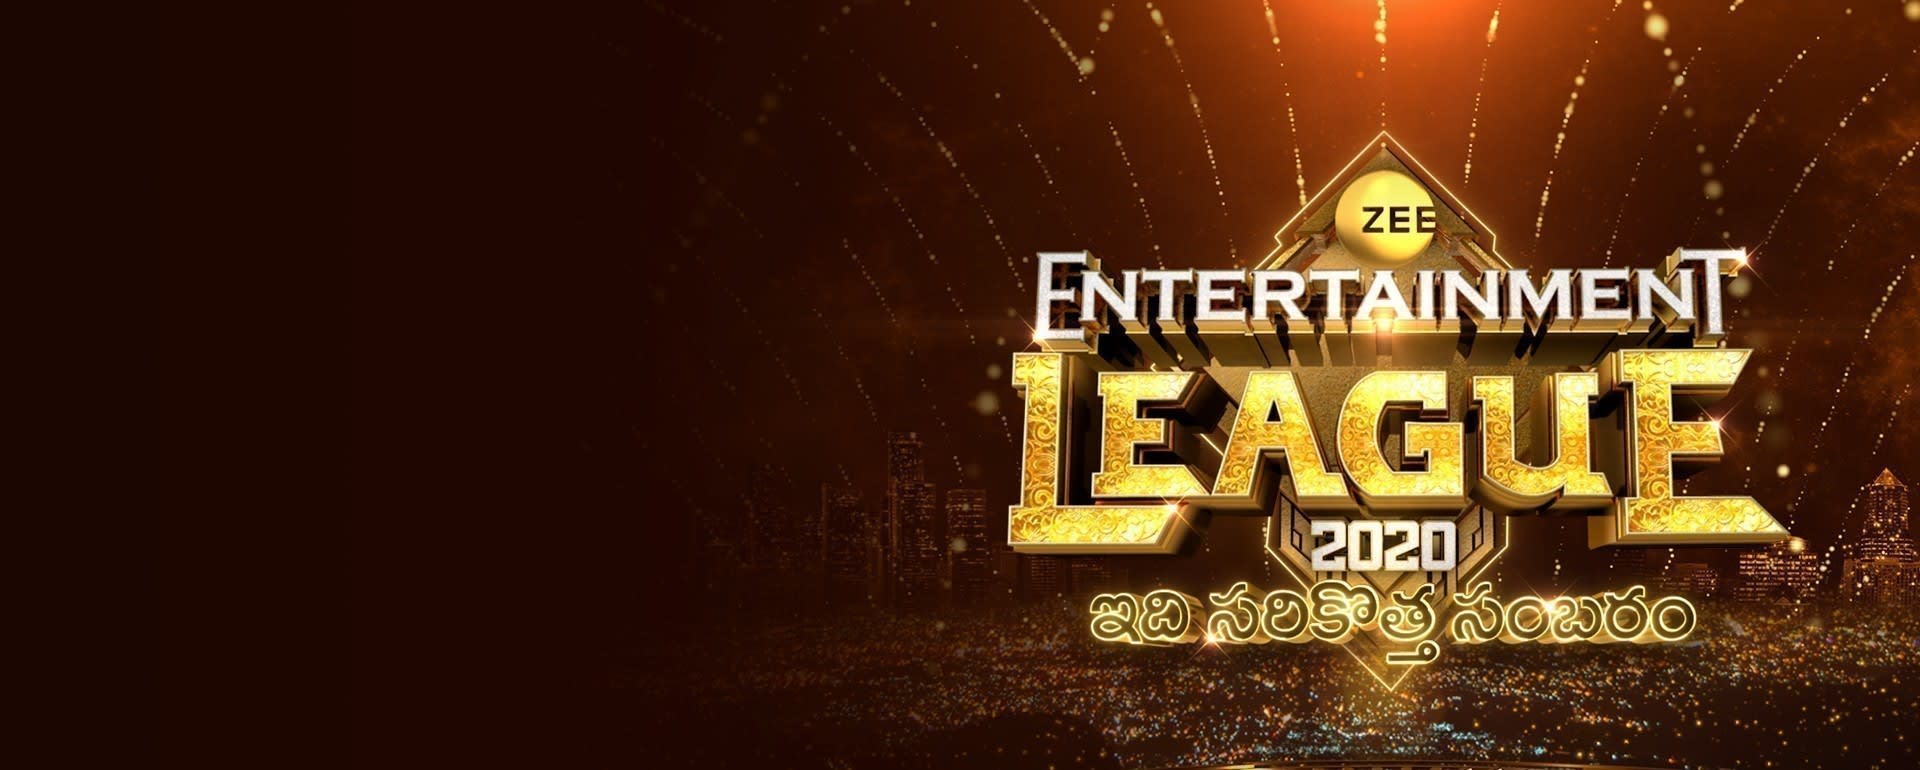 Zee Entertainment League 2020